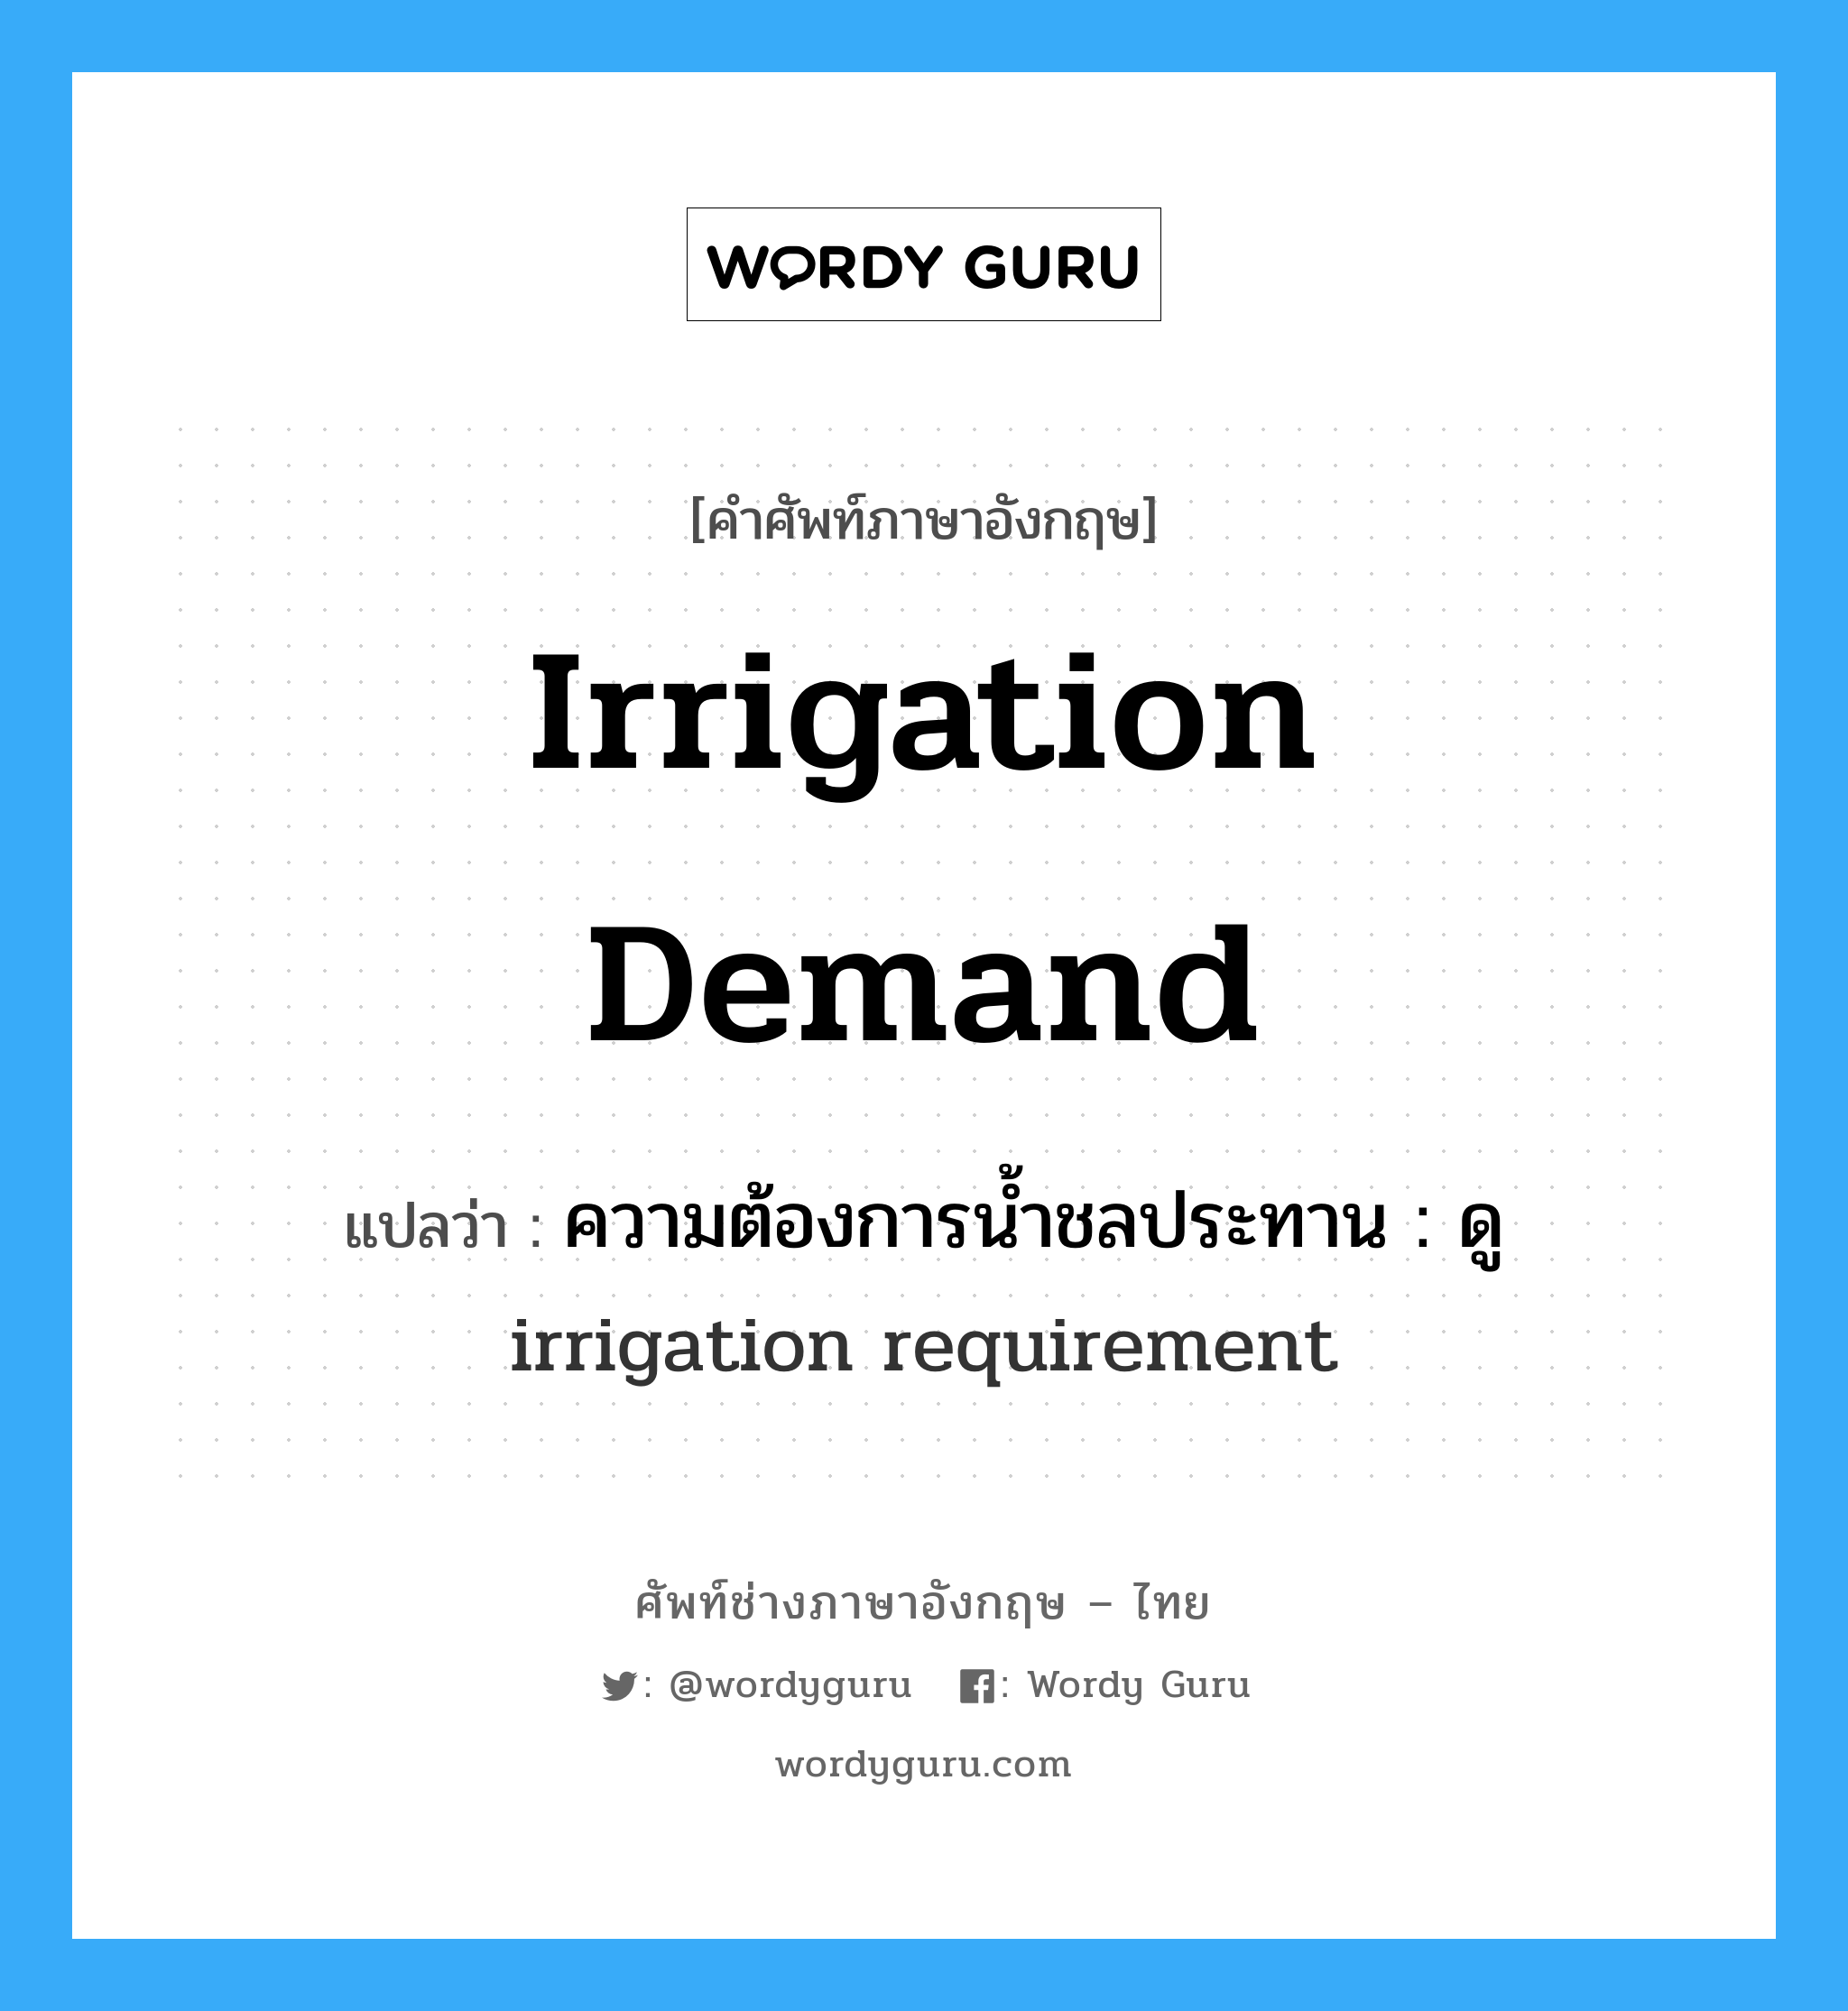 ความต้องการน้ำชลประทาน : ดู irrigation requirement ภาษาอังกฤษ?, คำศัพท์ช่างภาษาอังกฤษ - ไทย ความต้องการน้ำชลประทาน : ดู irrigation requirement คำศัพท์ภาษาอังกฤษ ความต้องการน้ำชลประทาน : ดู irrigation requirement แปลว่า irrigation demand